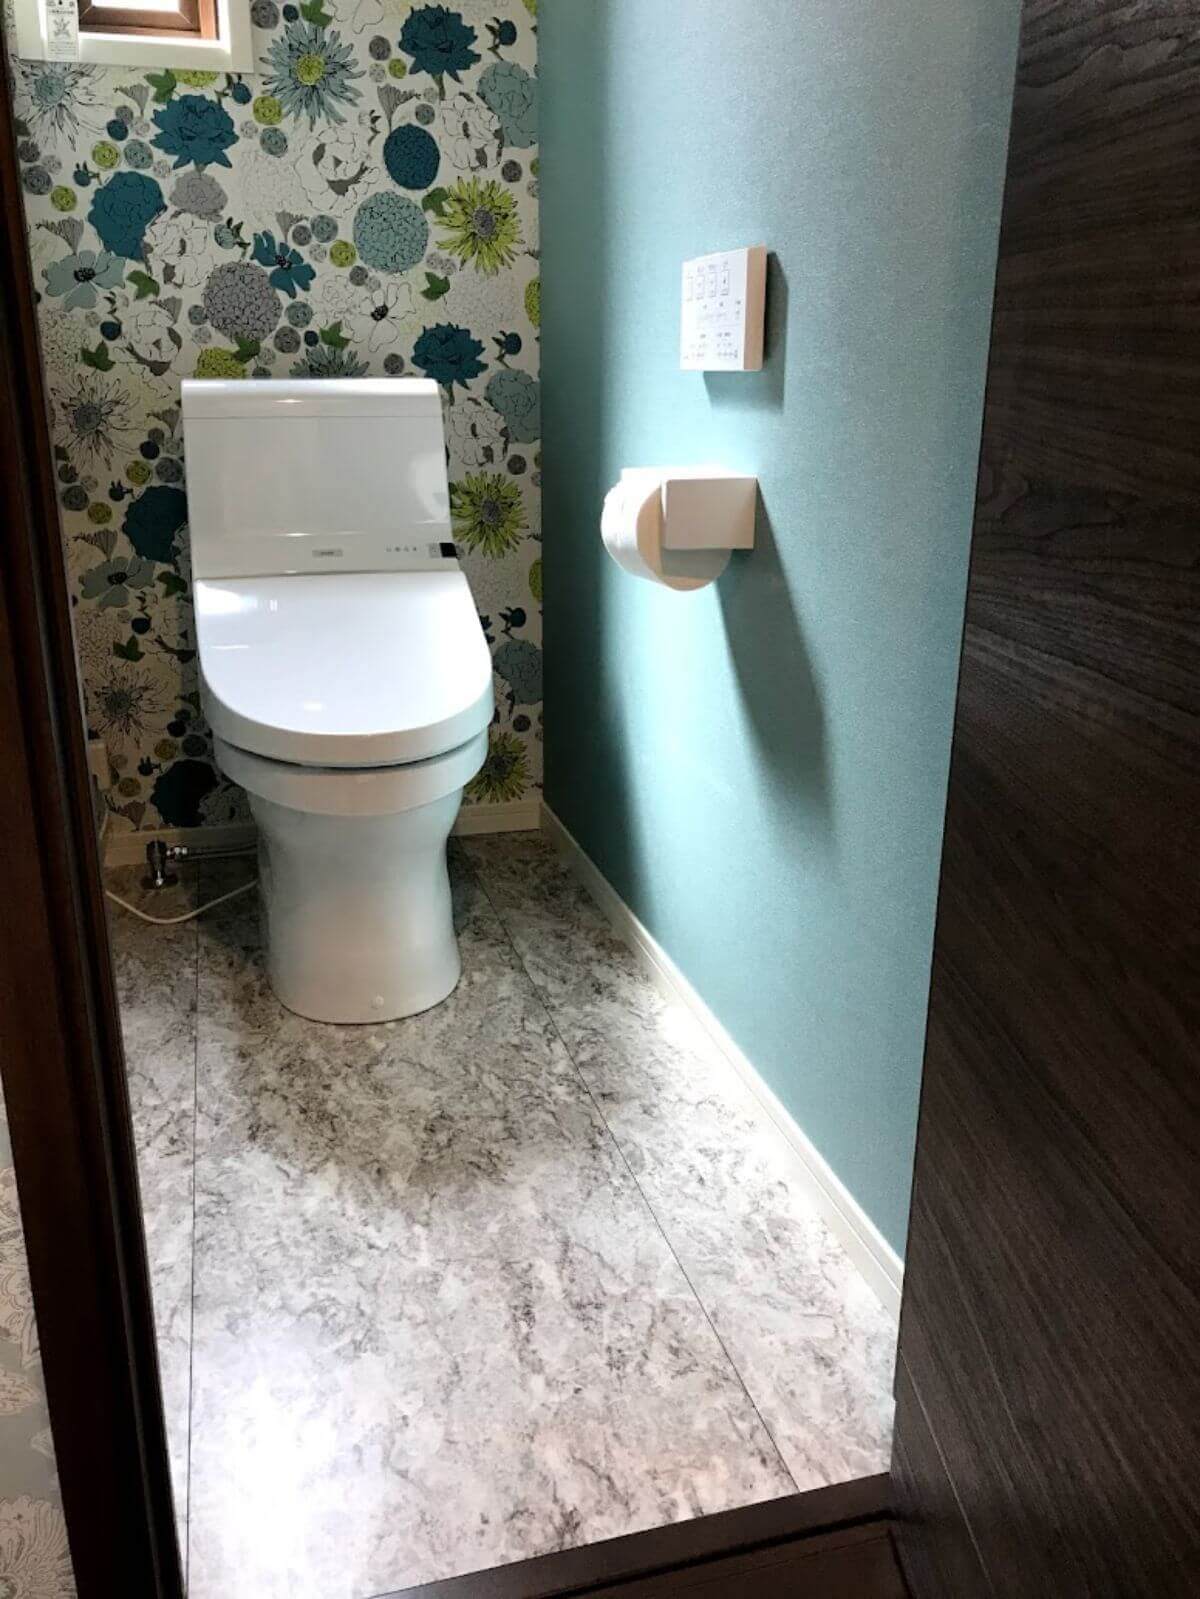 トイレ正面から見たリモコンと床